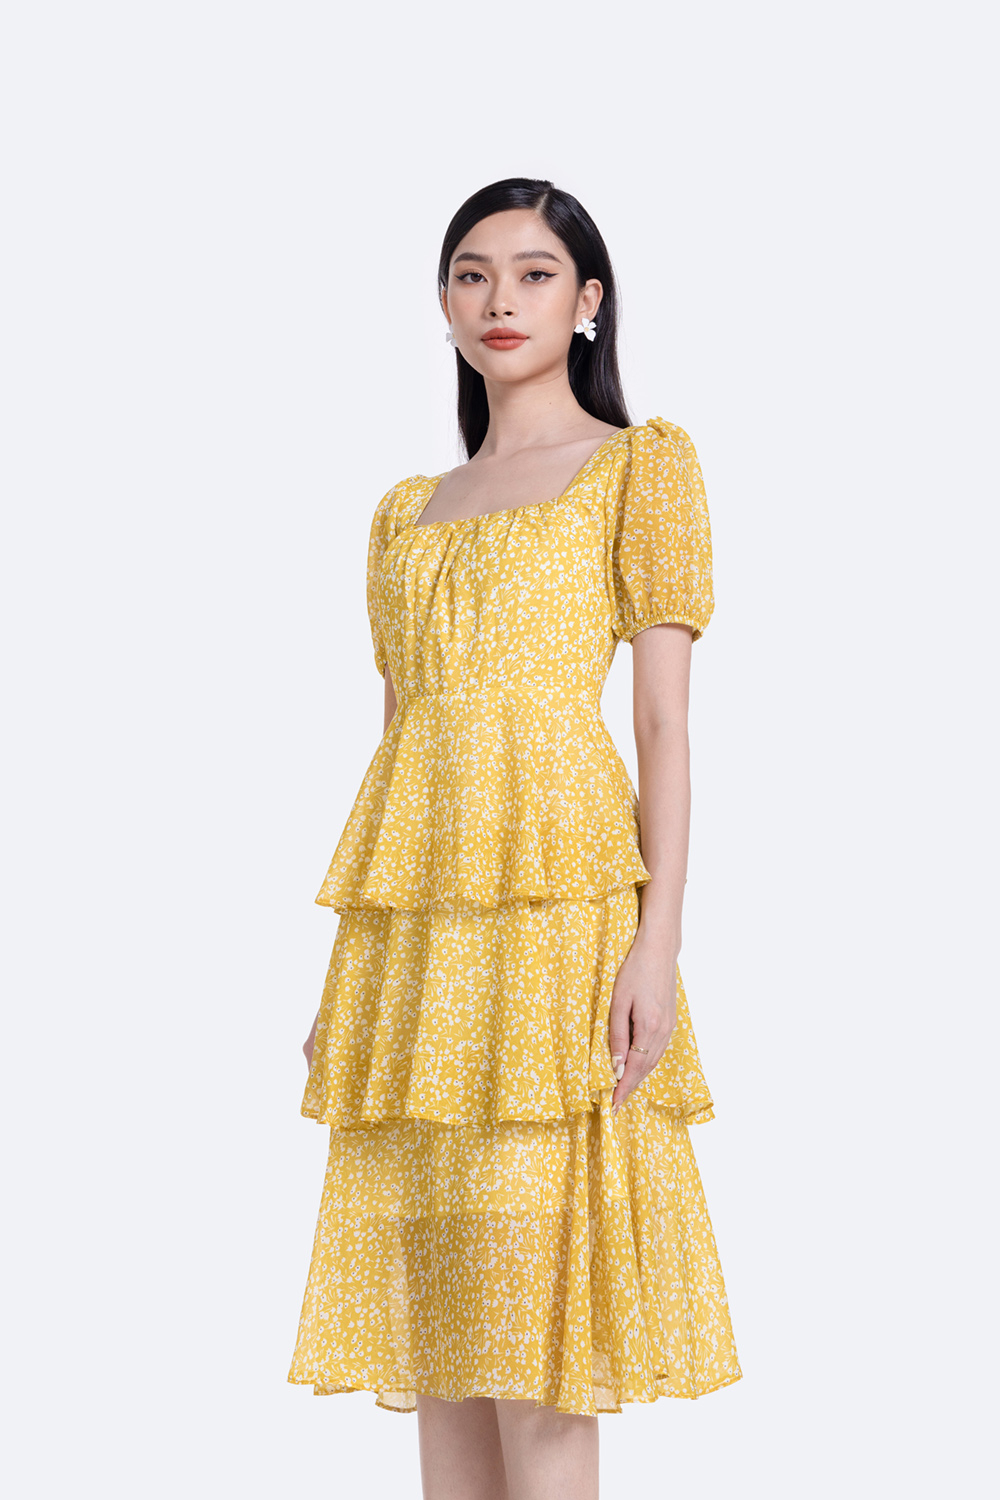 LOVI SHOP - Đầm voan hoa nhí thiết kế nút ngọc cổ V phong cách tiểu thư  vintage - Váy Fashion